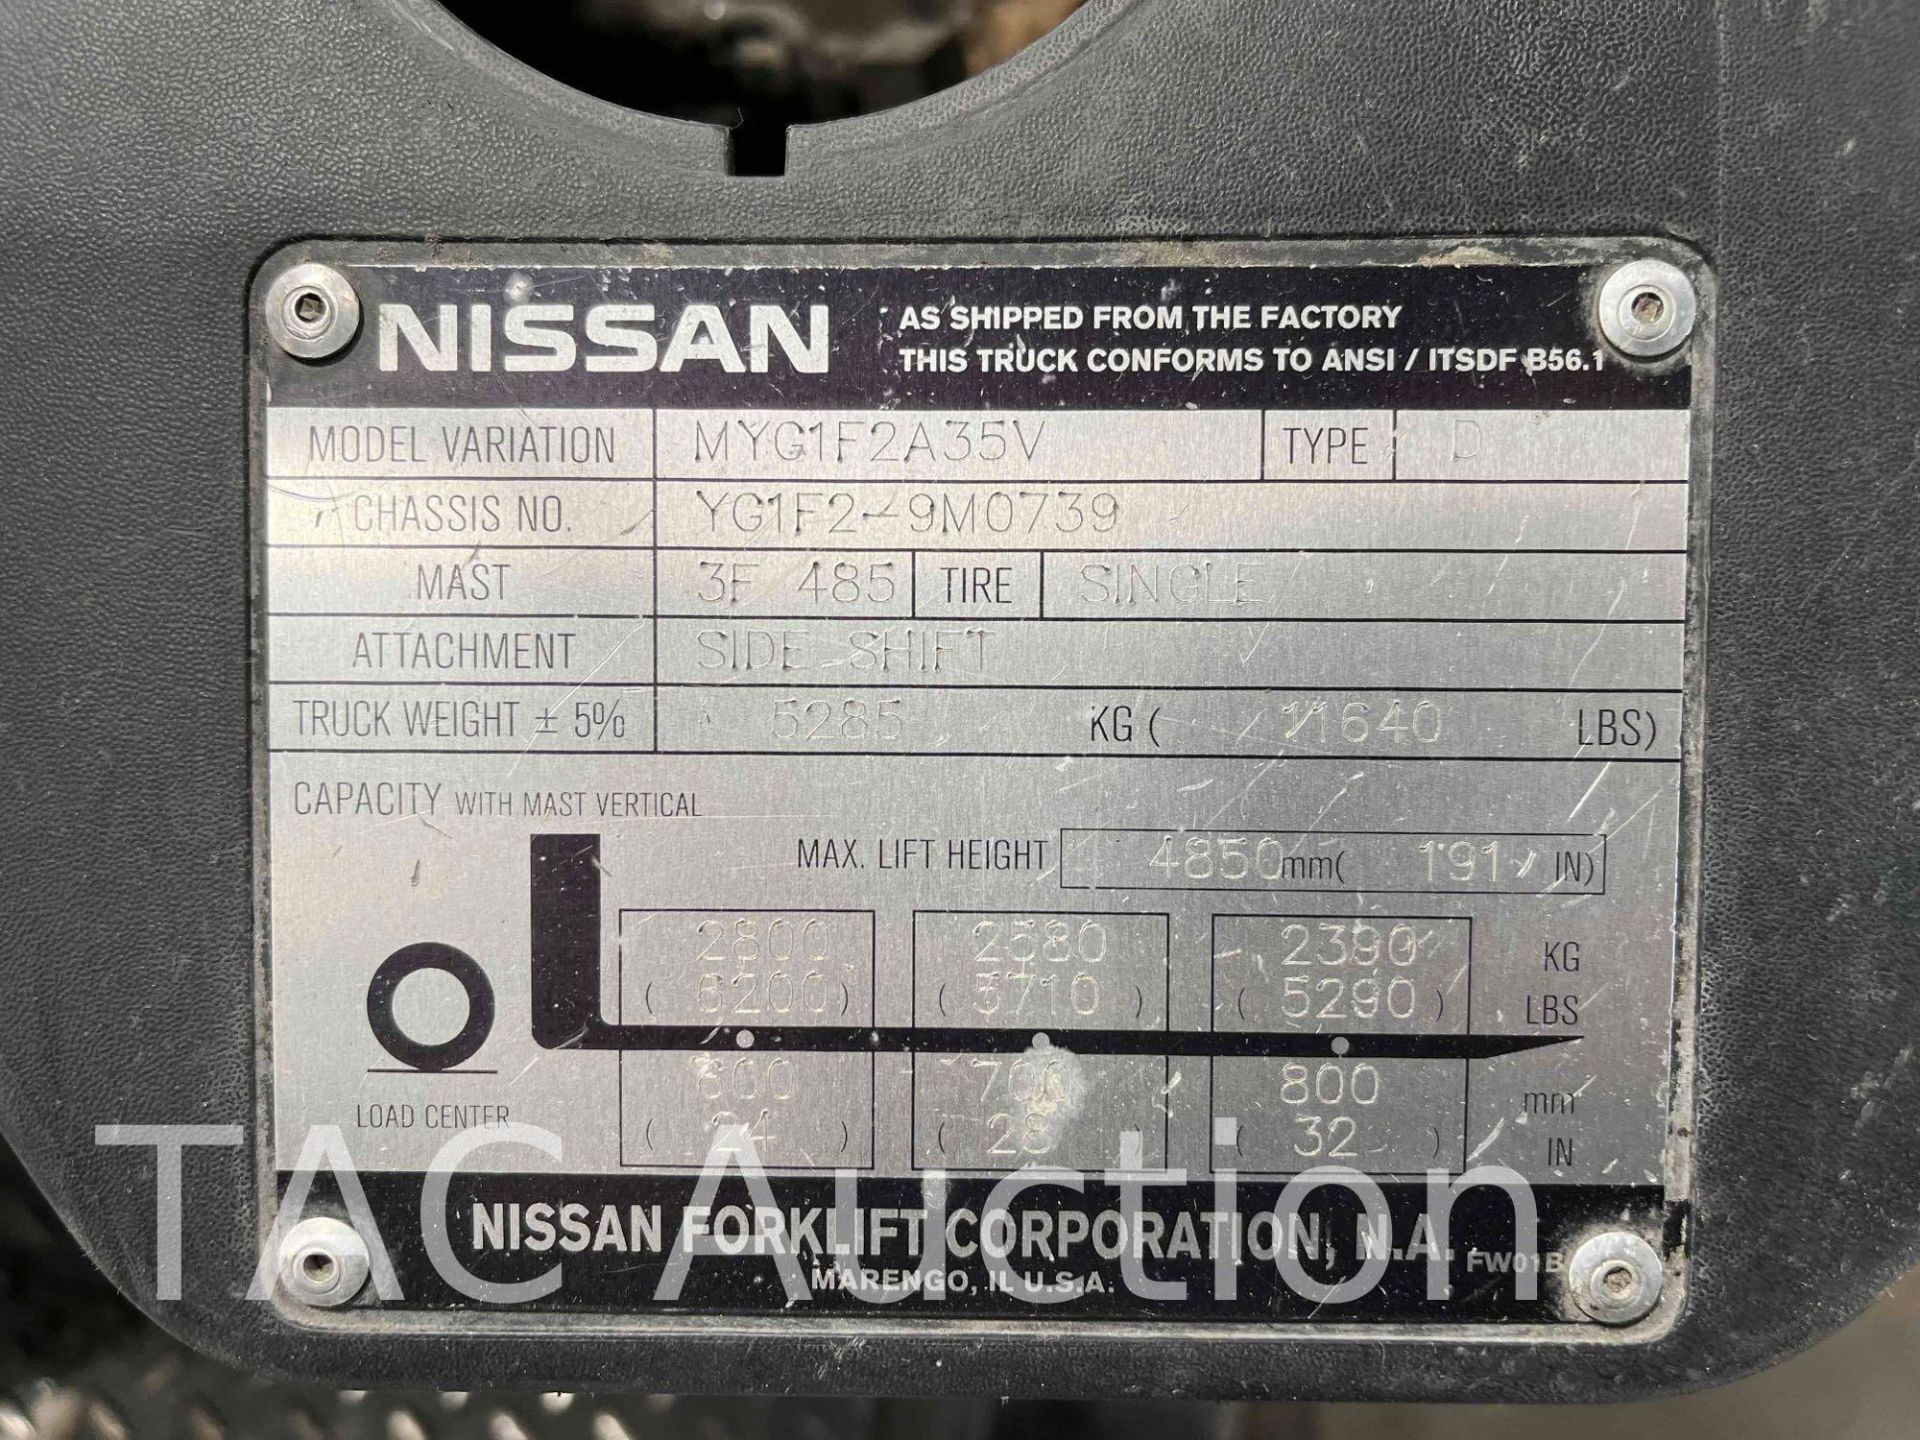 2012 Nissan 70 Forklift - Image 16 of 16